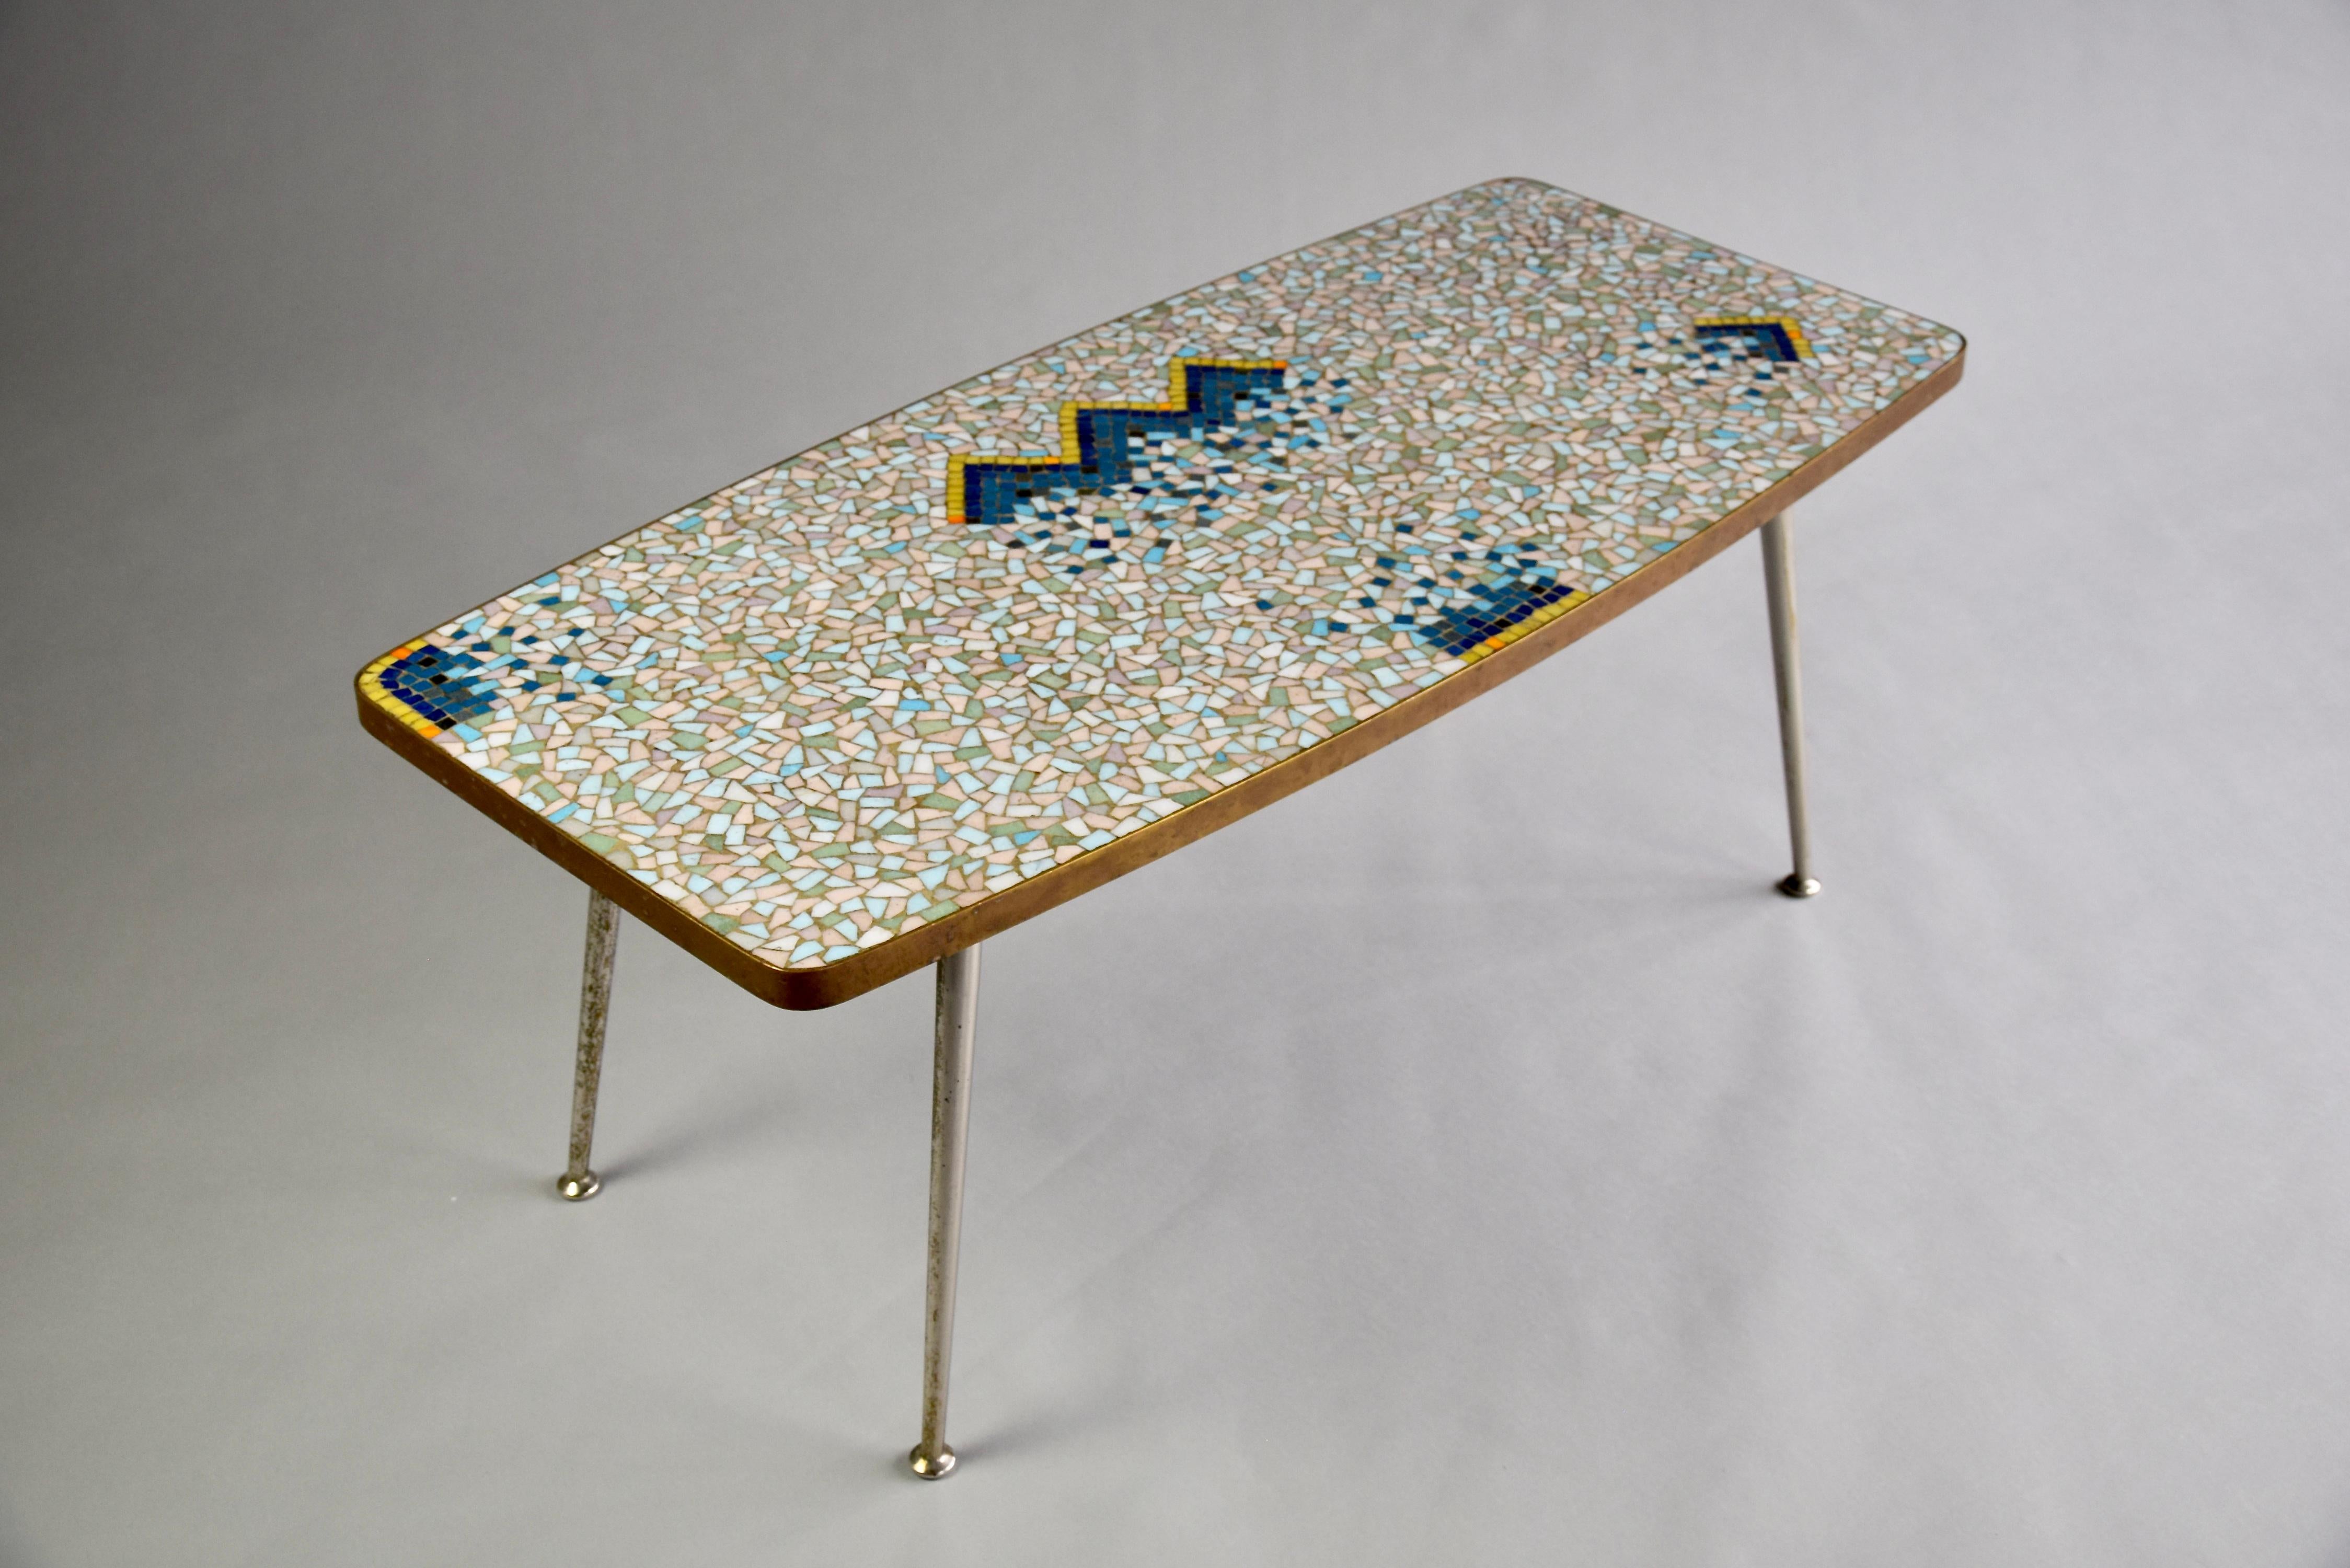 Table basse en mosaïque colorée et laiton de l'artiste Berthold Muller. Toutes les créations de Berthold Muller sont uniques. Les carreaux de mosaïque sont disposés selon un magnifique motif abstrait, qui rappelle l'art moderne de l'époque. Le